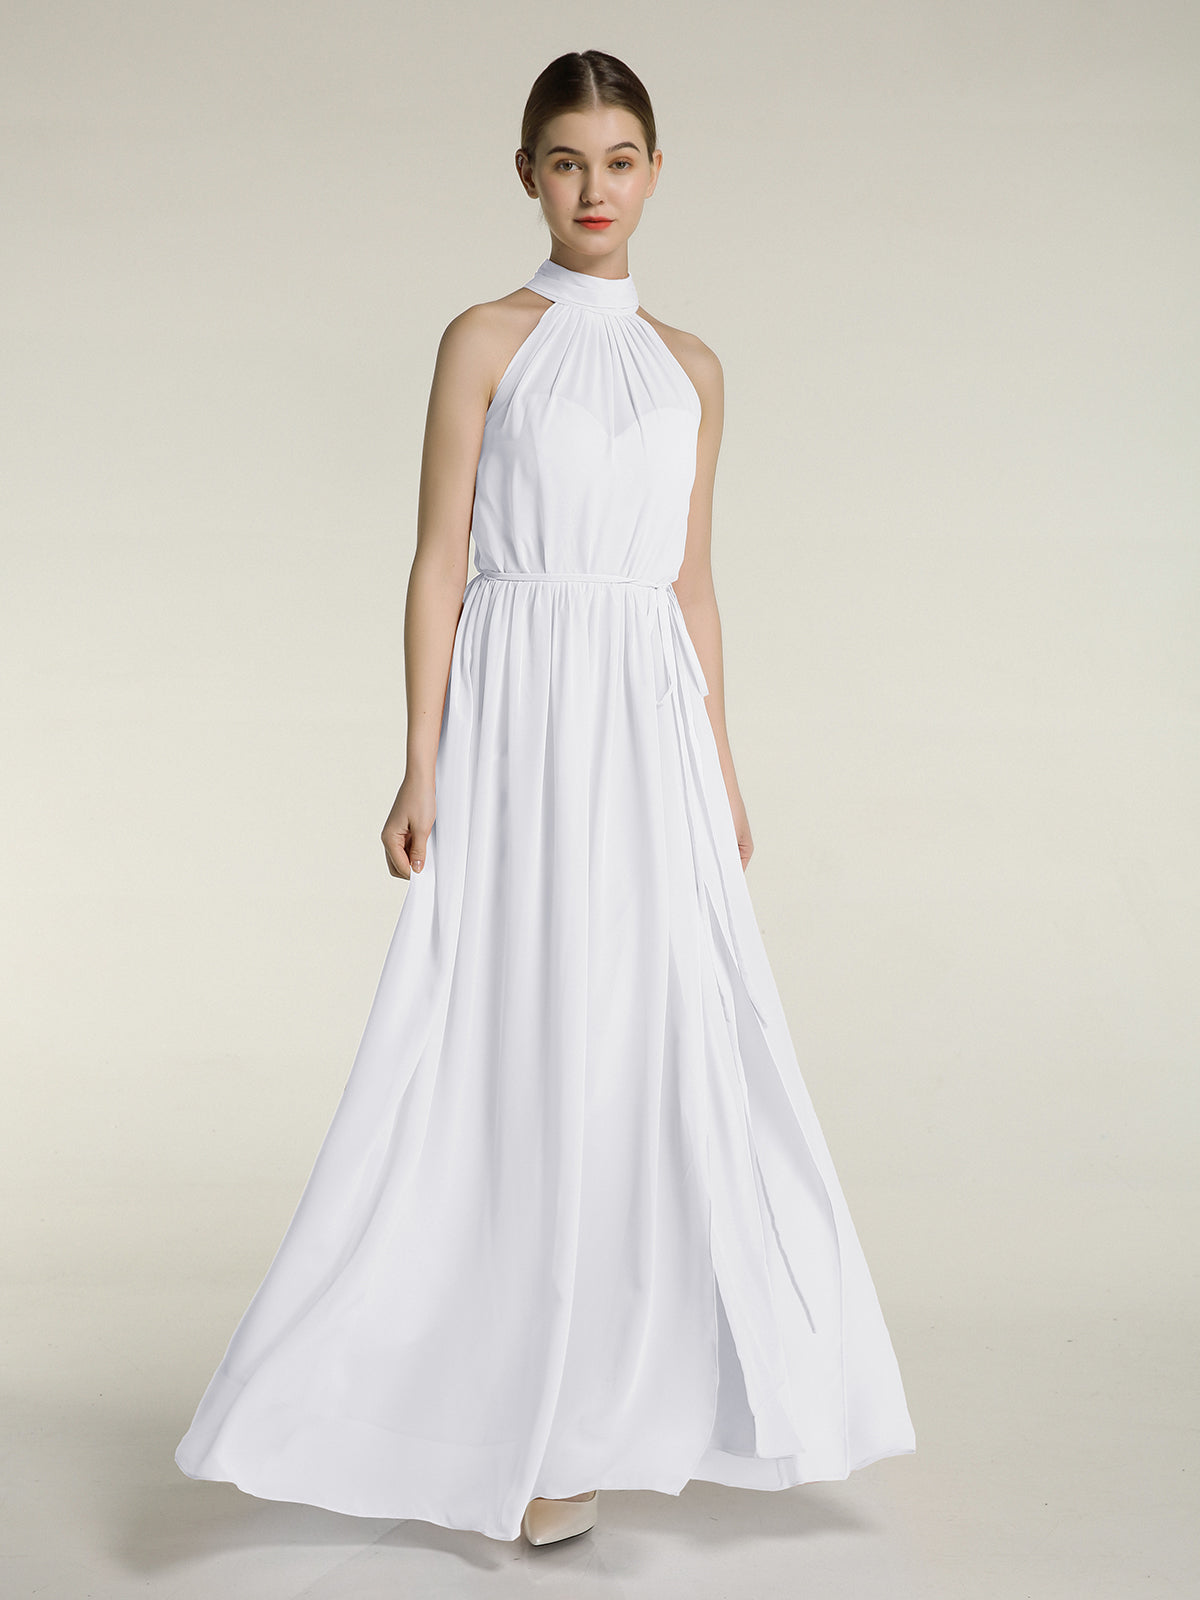 KIMI Dress in White